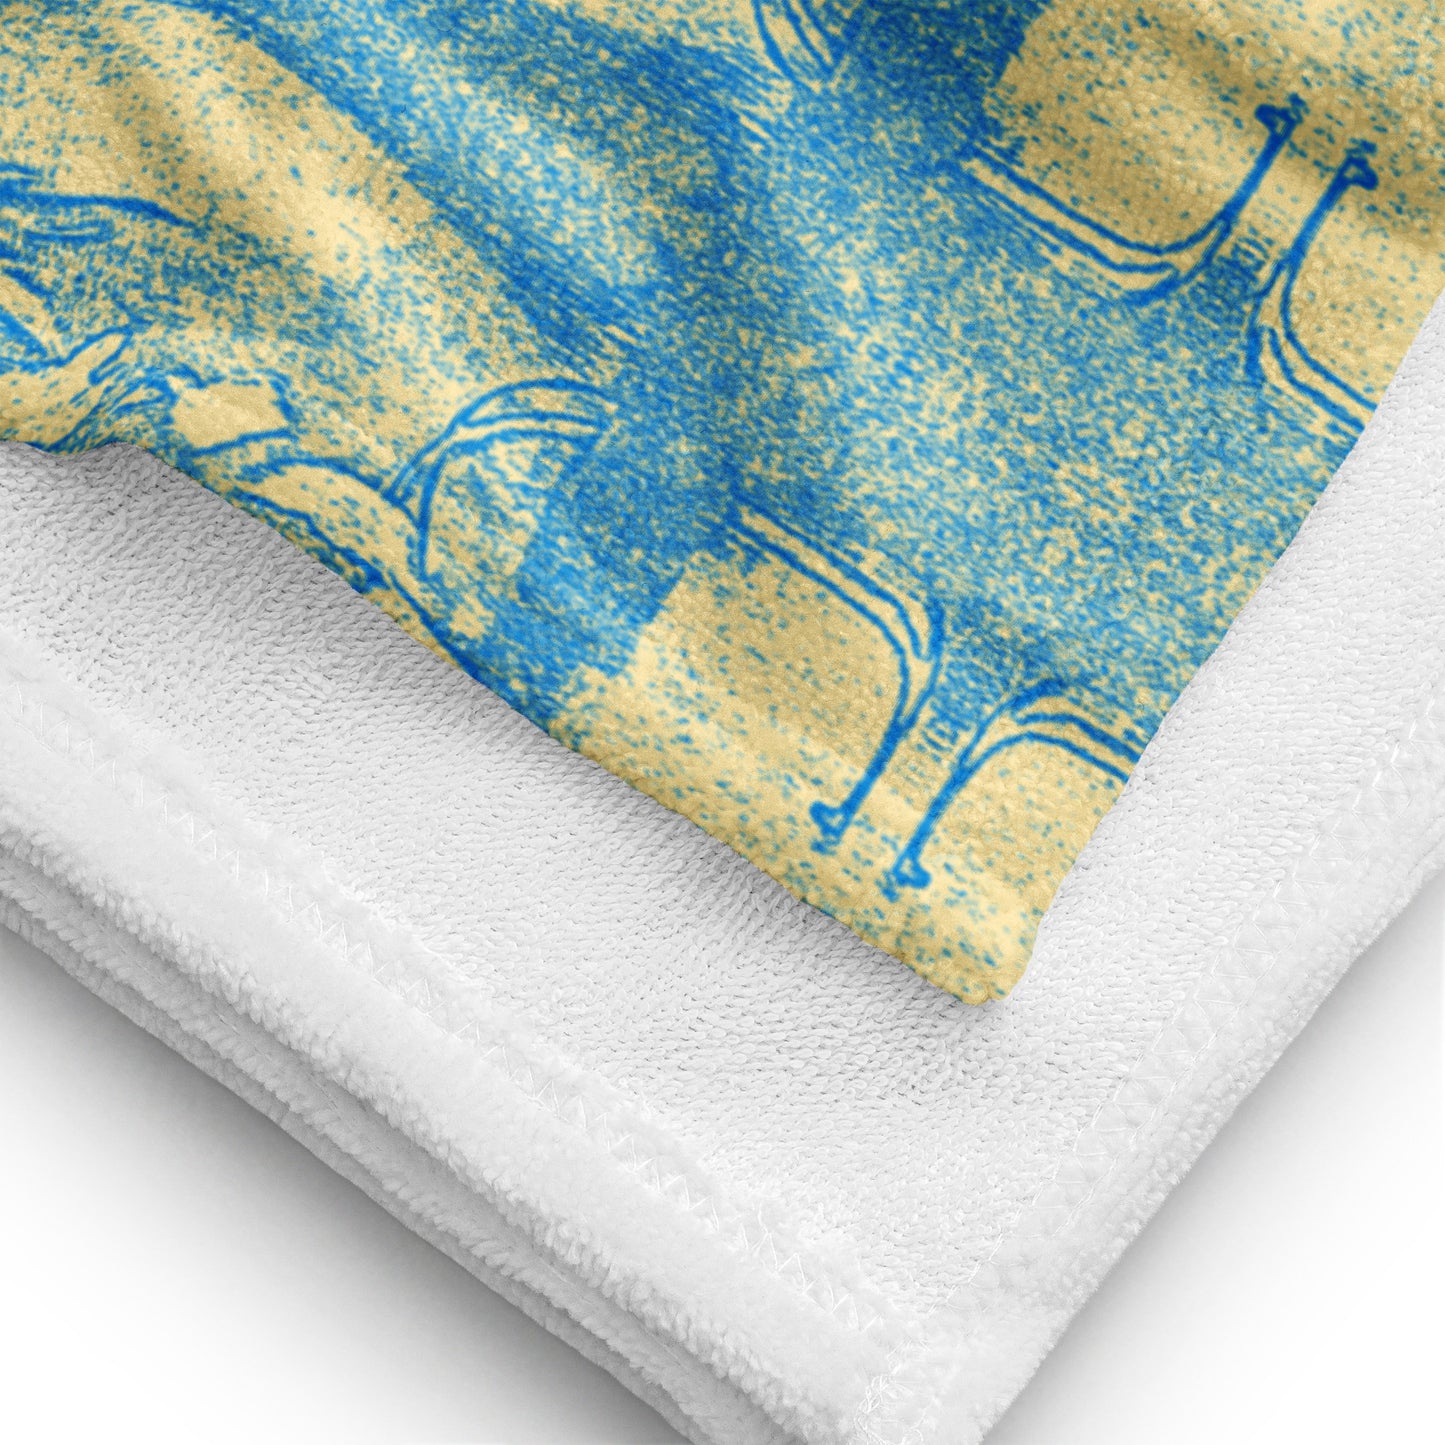 BLUE CITRV Towel